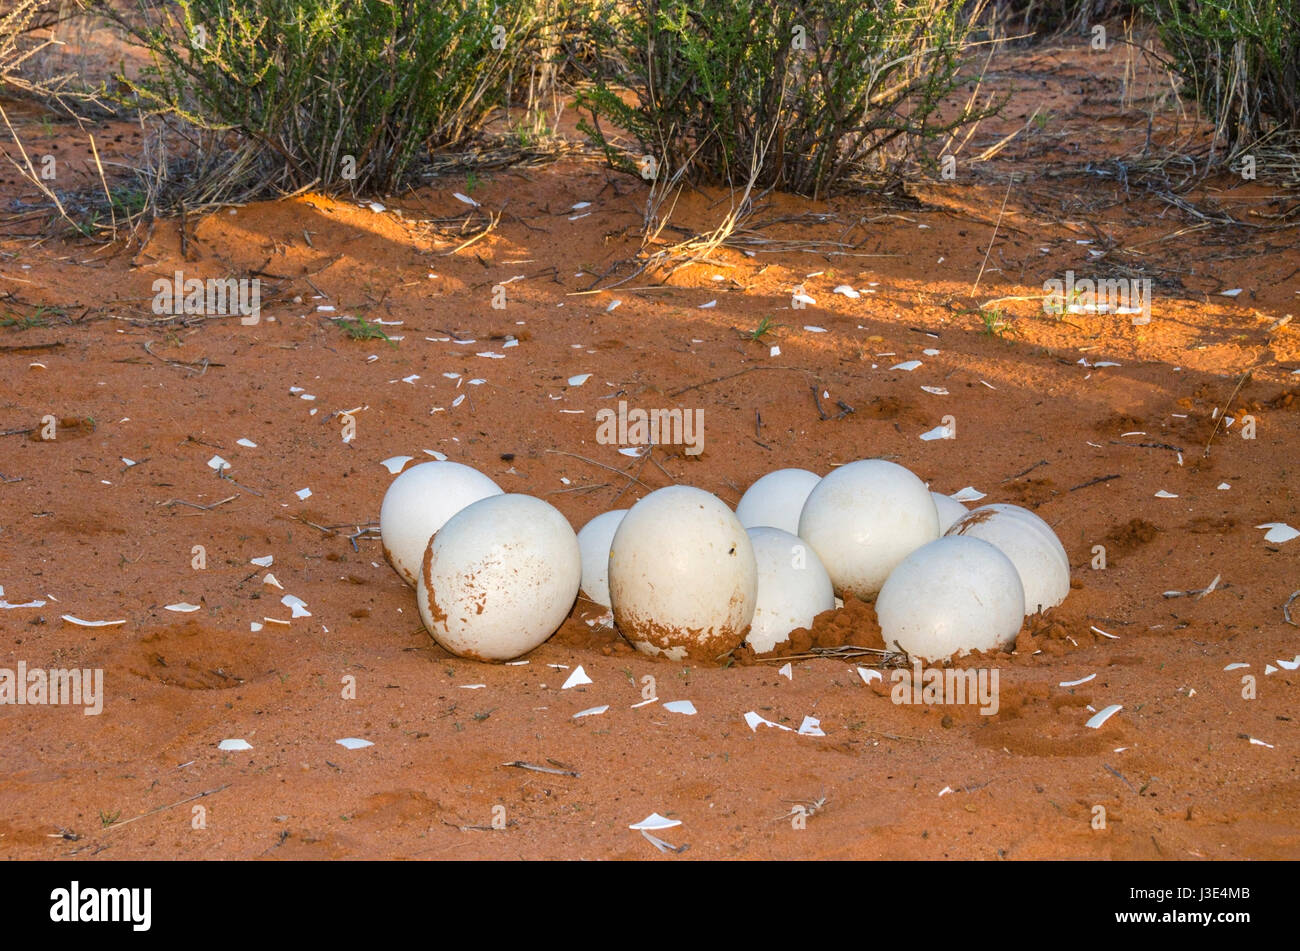 Frizione delle uova - la più grande delle uova di uccello vivo - abbandonato da lo struzzo nel deserto del Kalahari, Namibia. Foto Stock